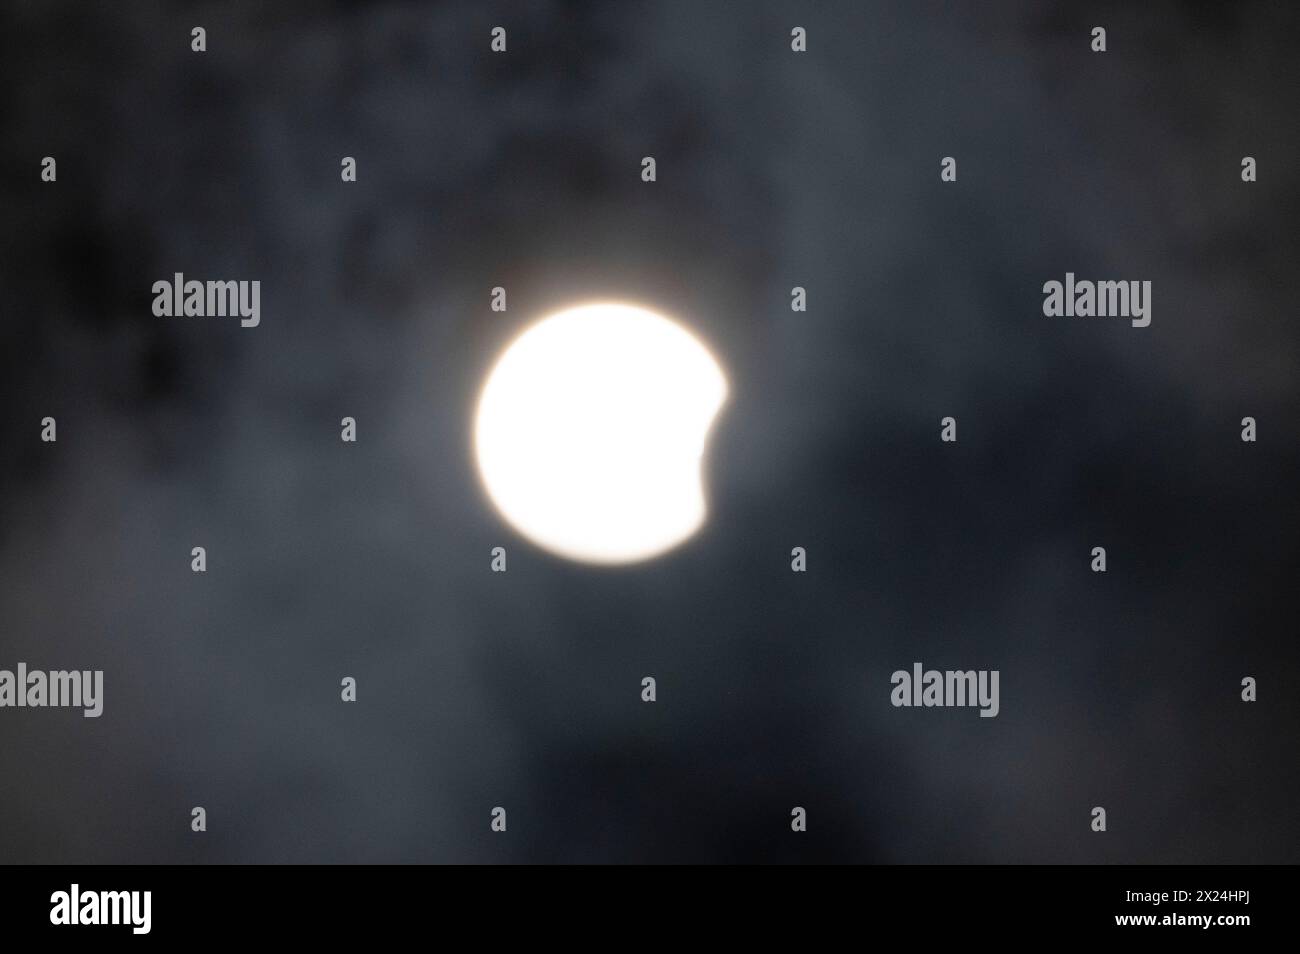 Le chemin de la totalité de l'éclipse solaire de 2024 est passé au-dessus du corps des ingénieurs de l'armée américaine, le lac Bardwell du district de Fort Worth. Situé à Ennis, Texas, le lac a offert un emplacement favorable pour voir l'éclipse à partir. Avec plus de quatre minutes de durée totale, il a donné aux photographes et aux passionnés amplement le temps de profiter de l'événement de la liste des seaux. L'éclipse maximale s'est produite à 13h42 Banque D'Images